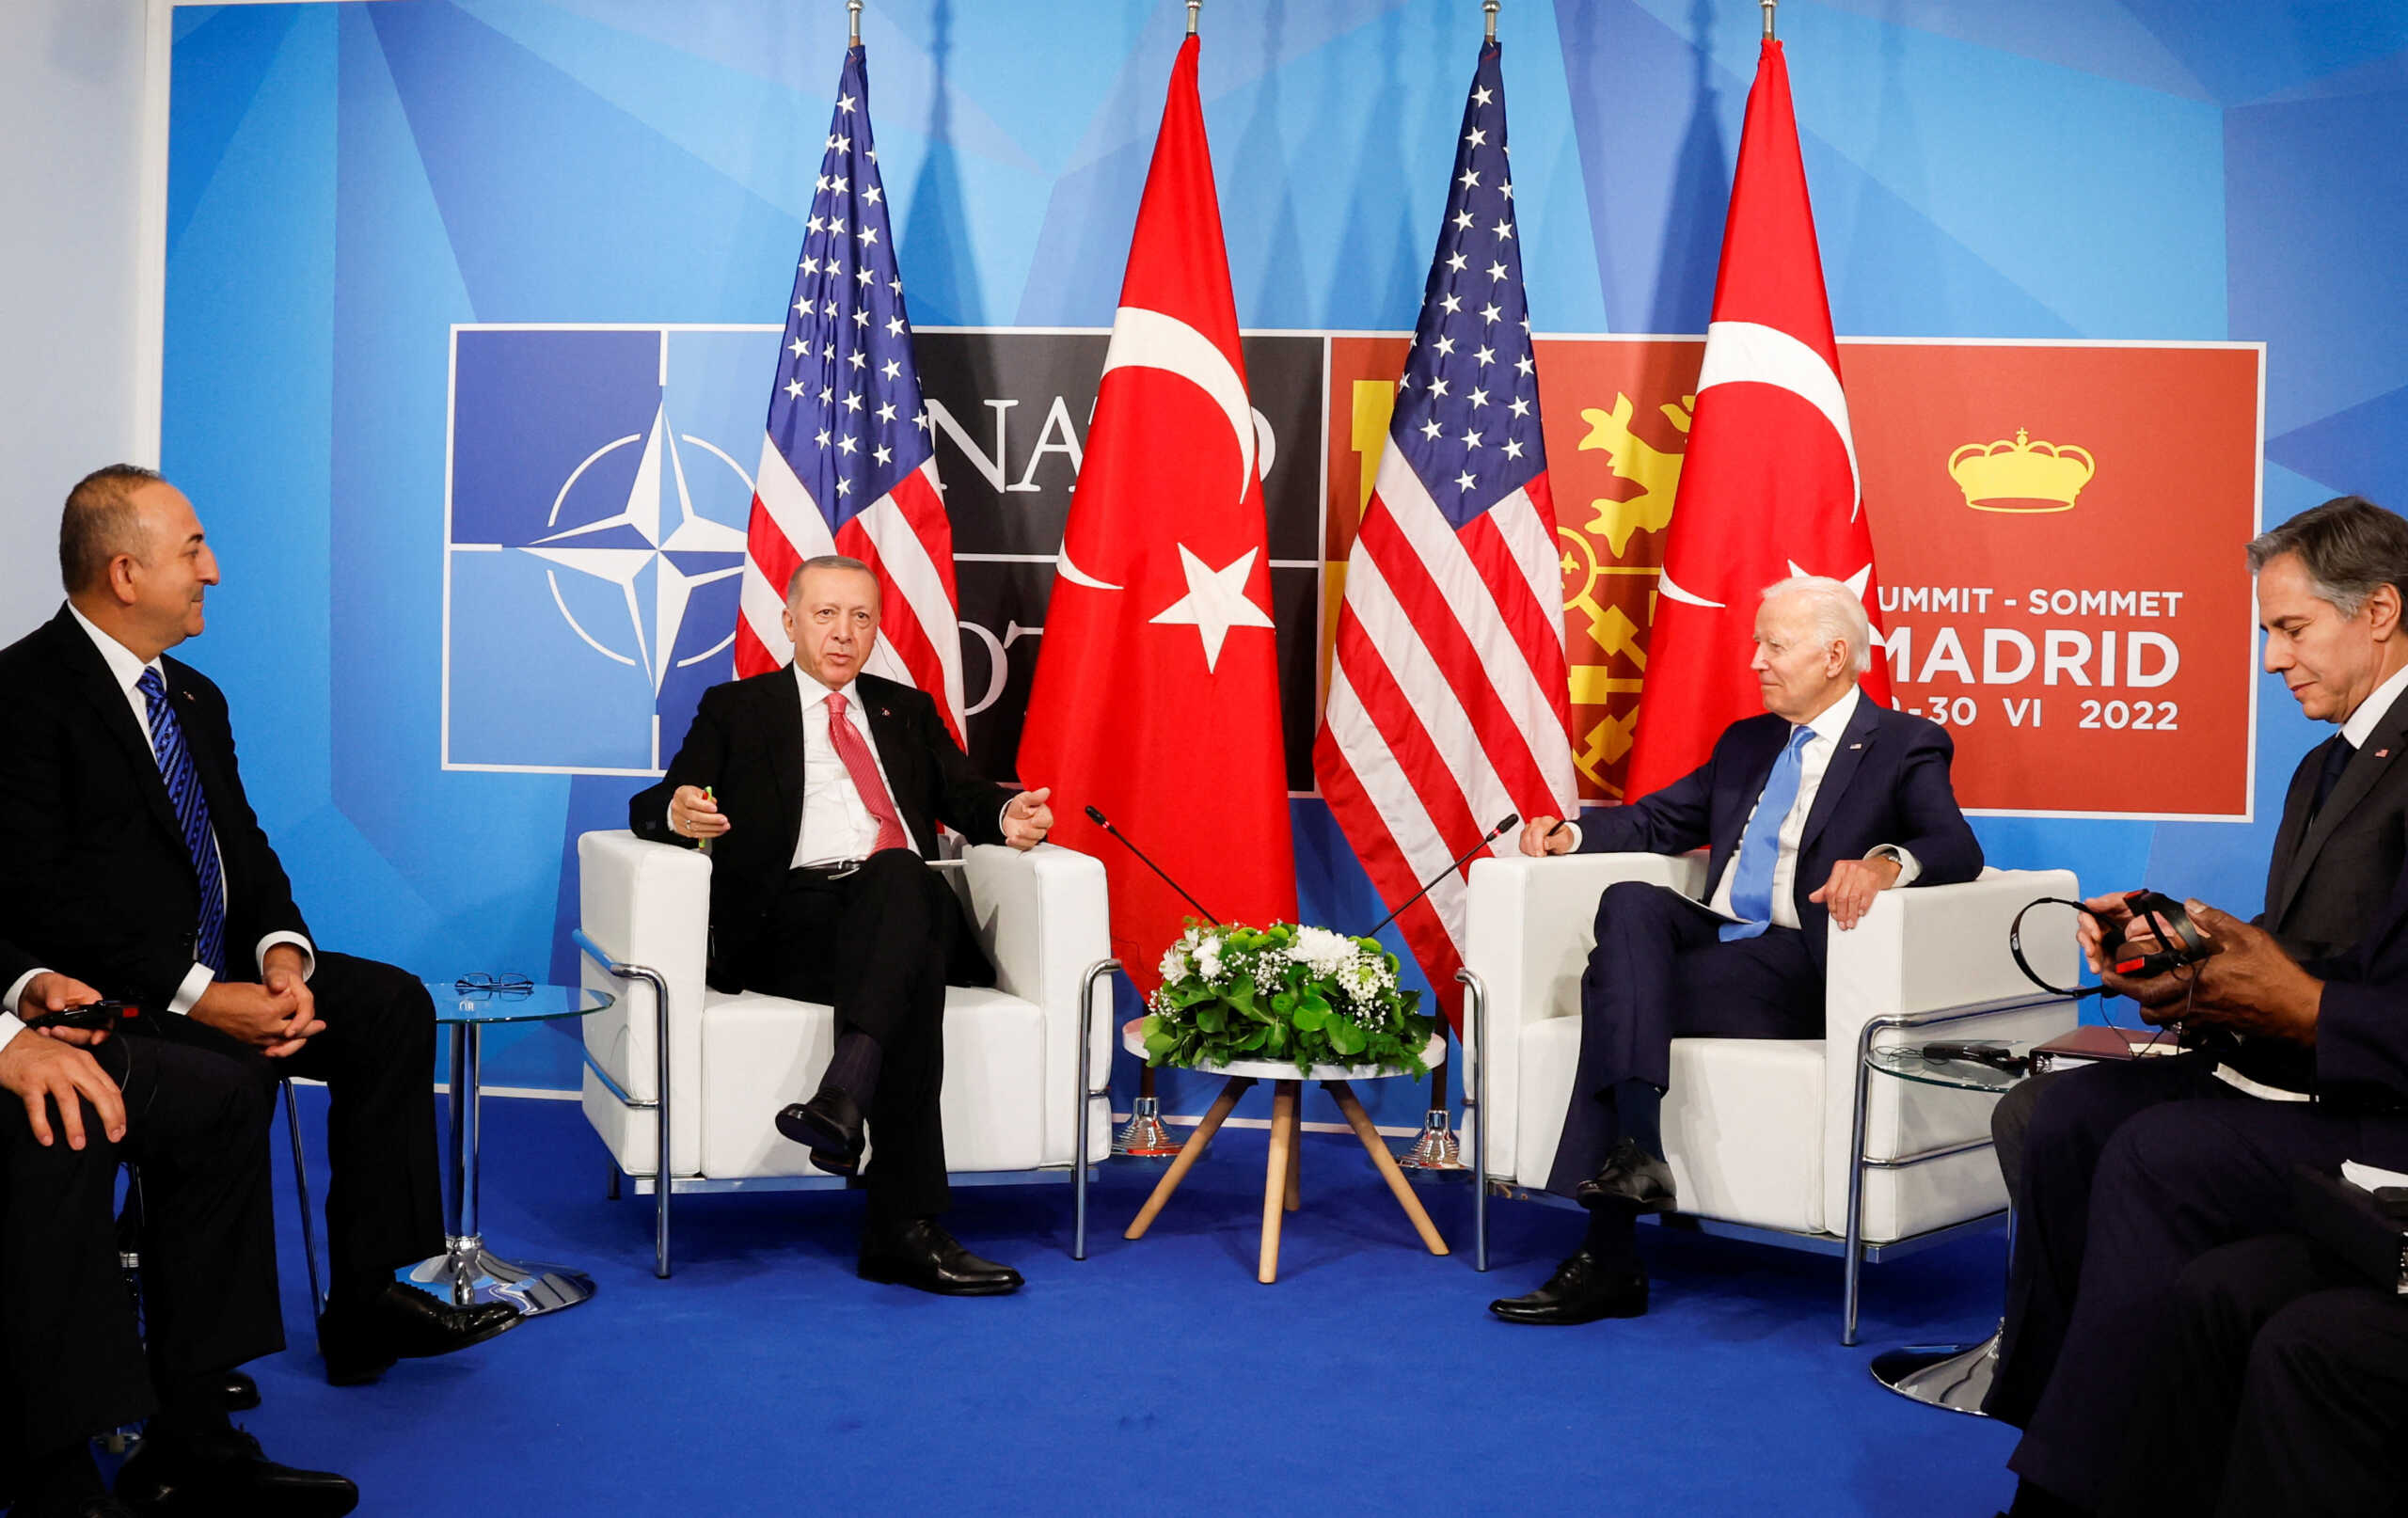 Σύνοδος του ΝΑΤΟ: Ο Μπάιντεν ζήτησε από τον Ερντογάν να διατηρηθεί η σταθερότητα στο Αιγαίο